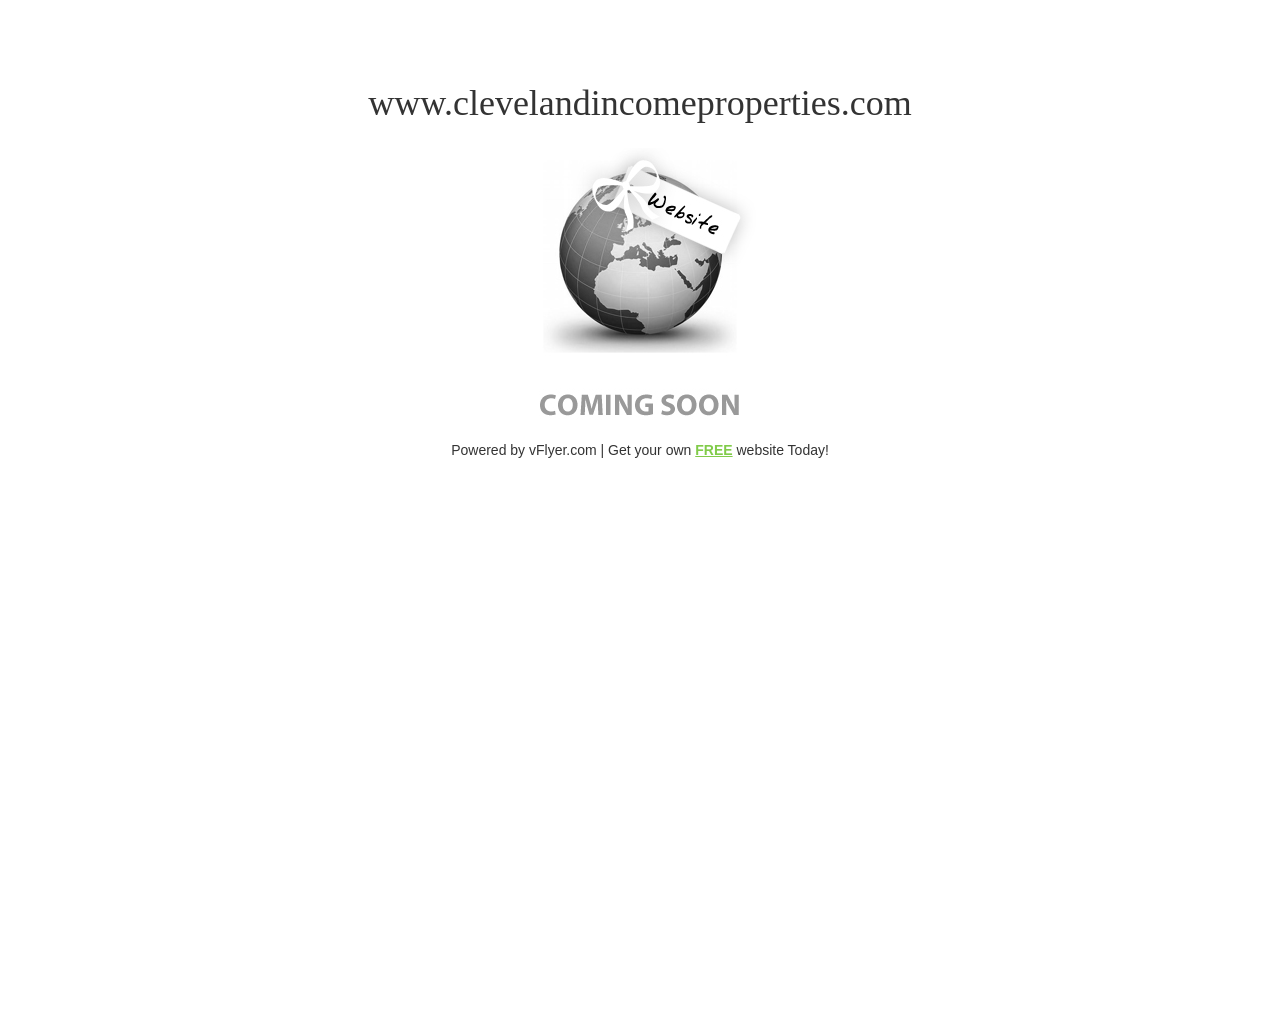 clevelandincomeproperties.com